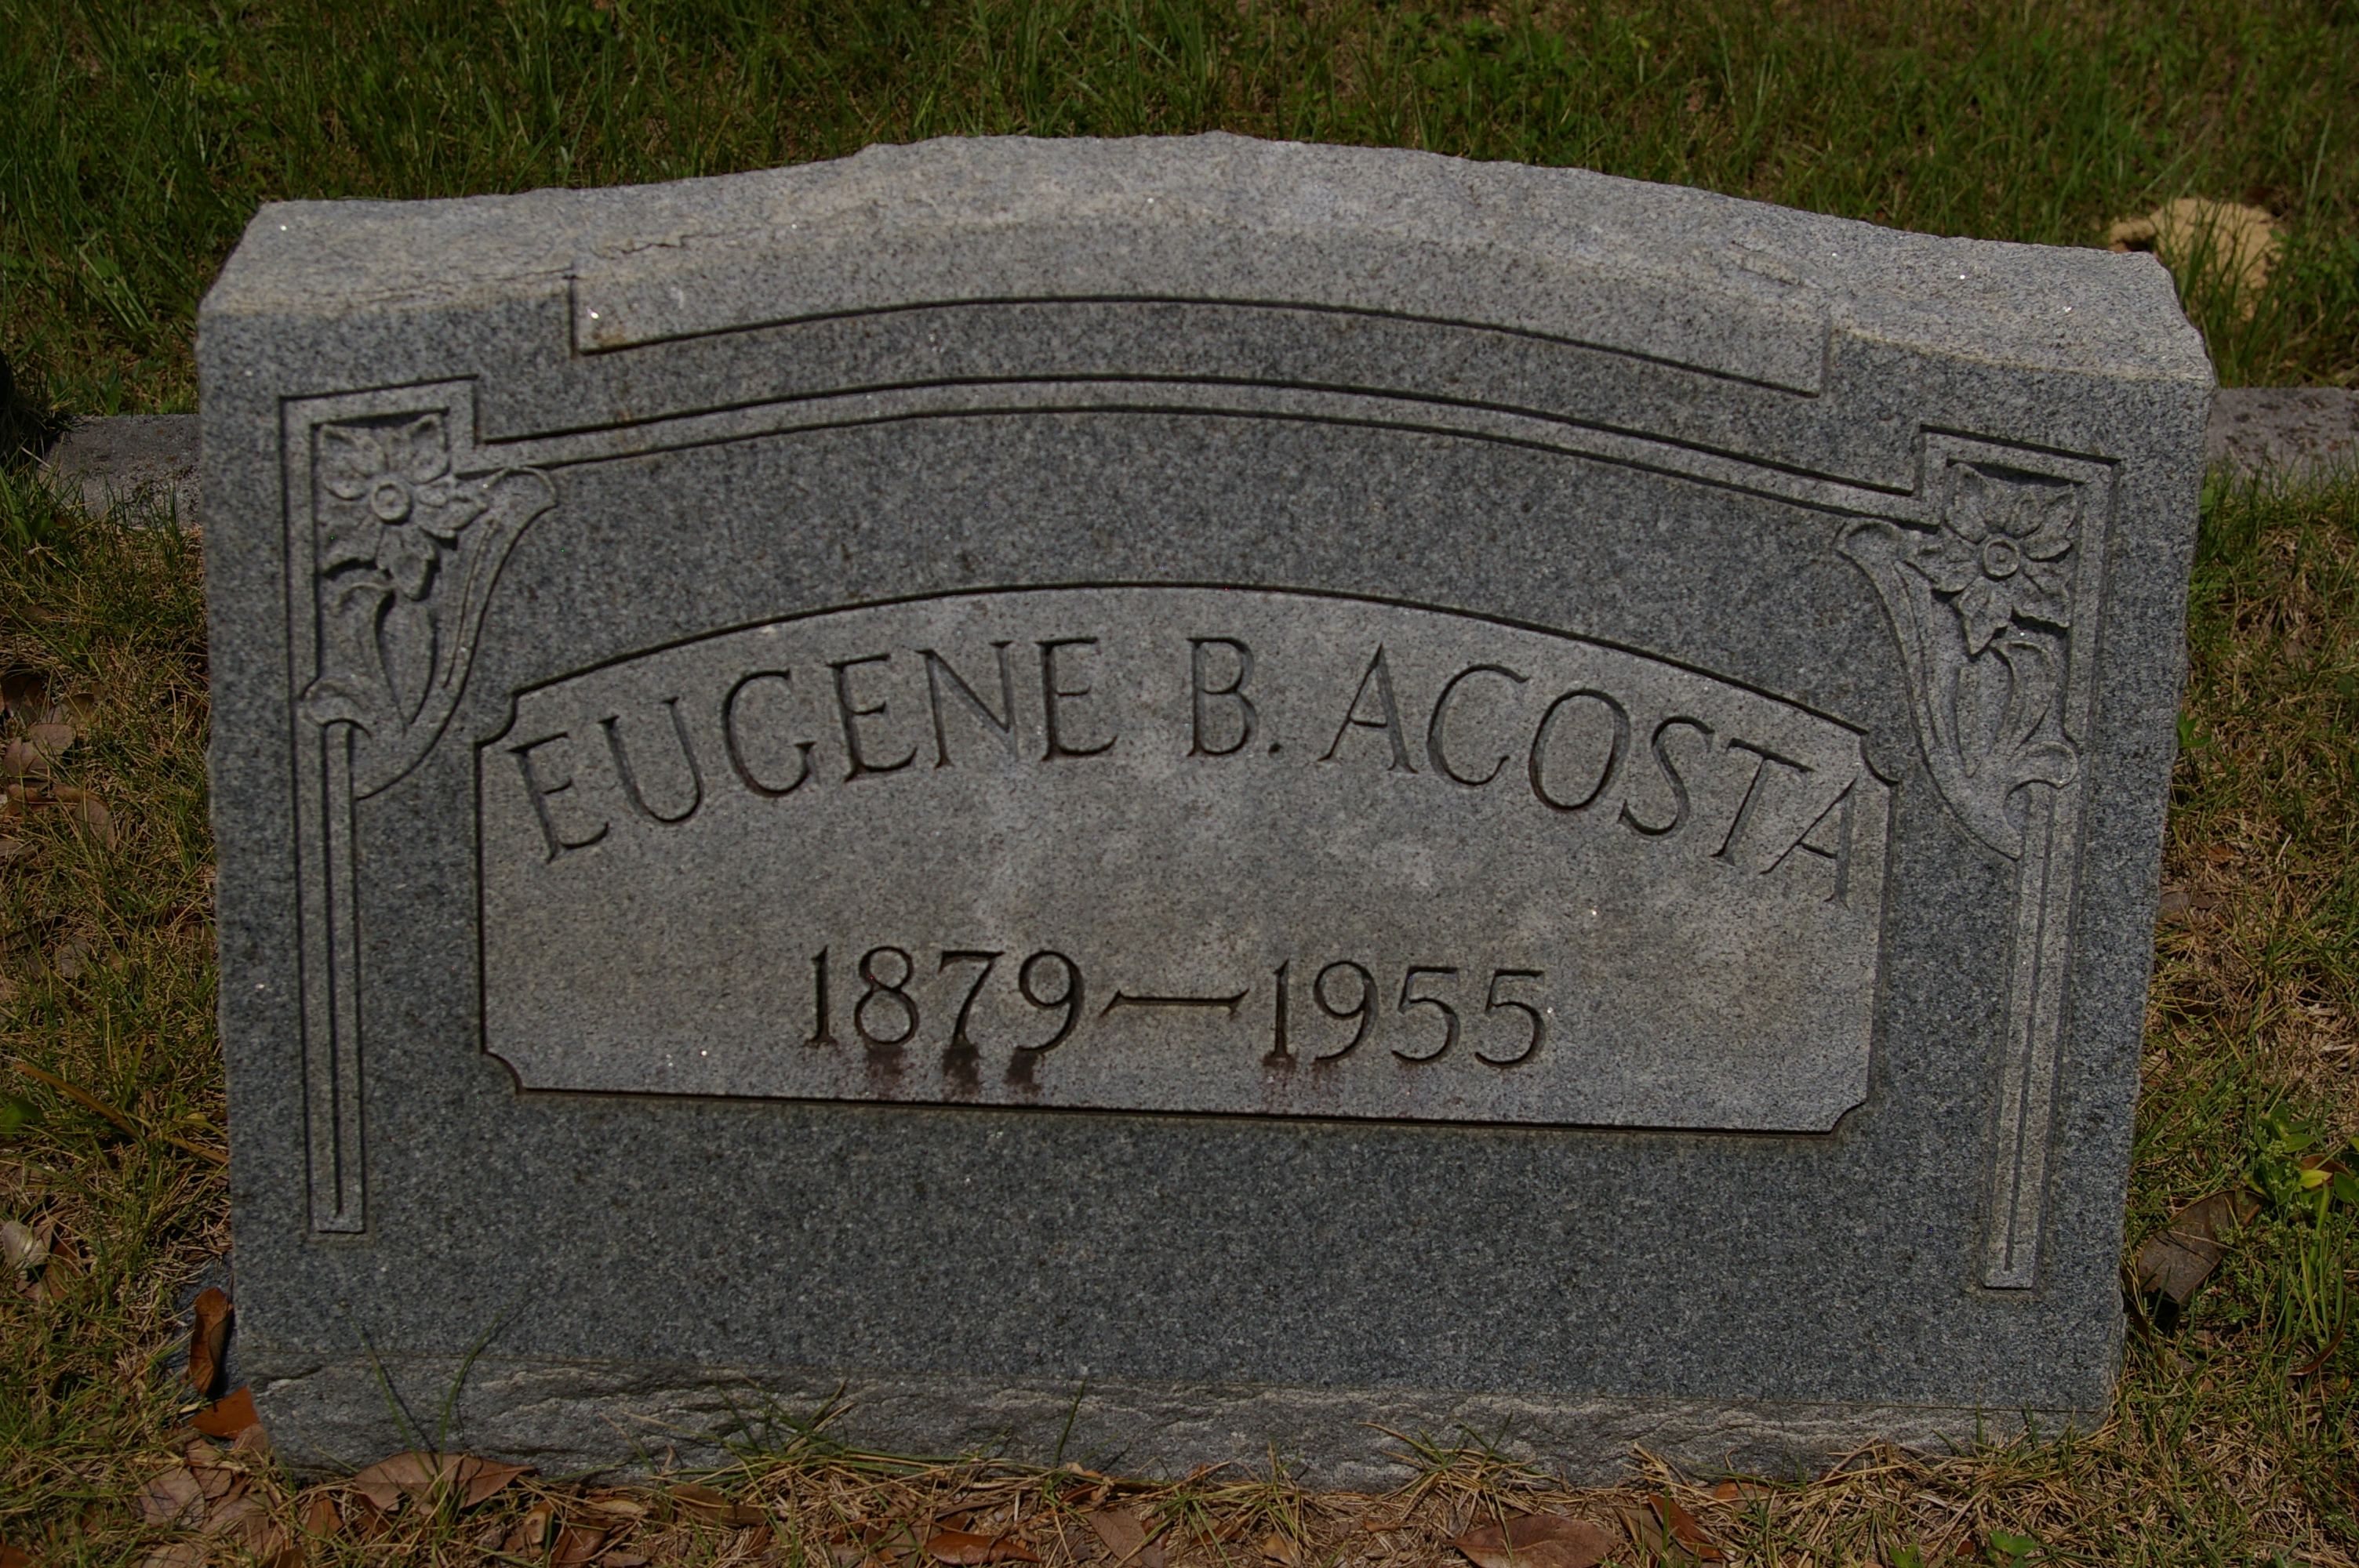 Eugene B. Acosta